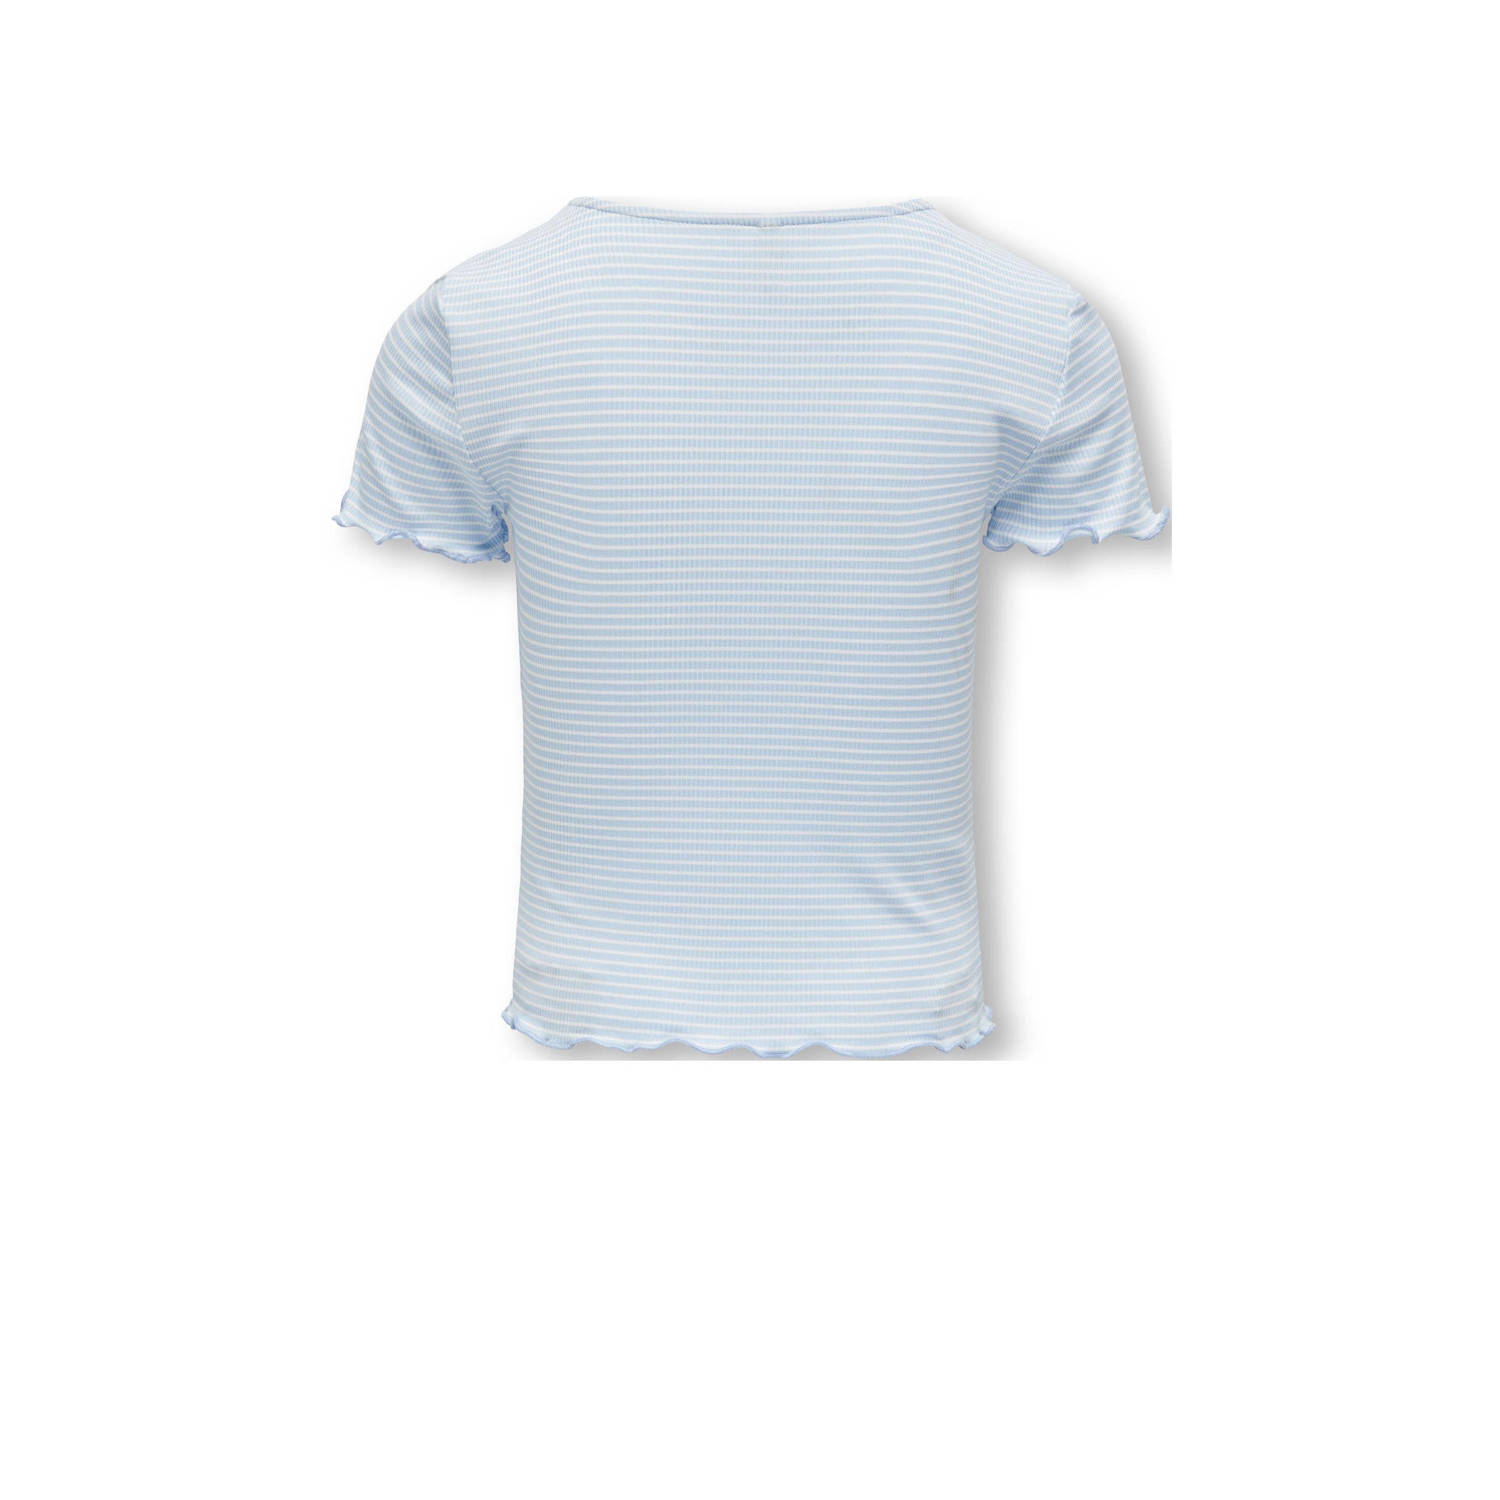 ONLY KIDS GIRL gestreept ribgebreid T-shirt KOGWILMA LIFE lichtblauw wit